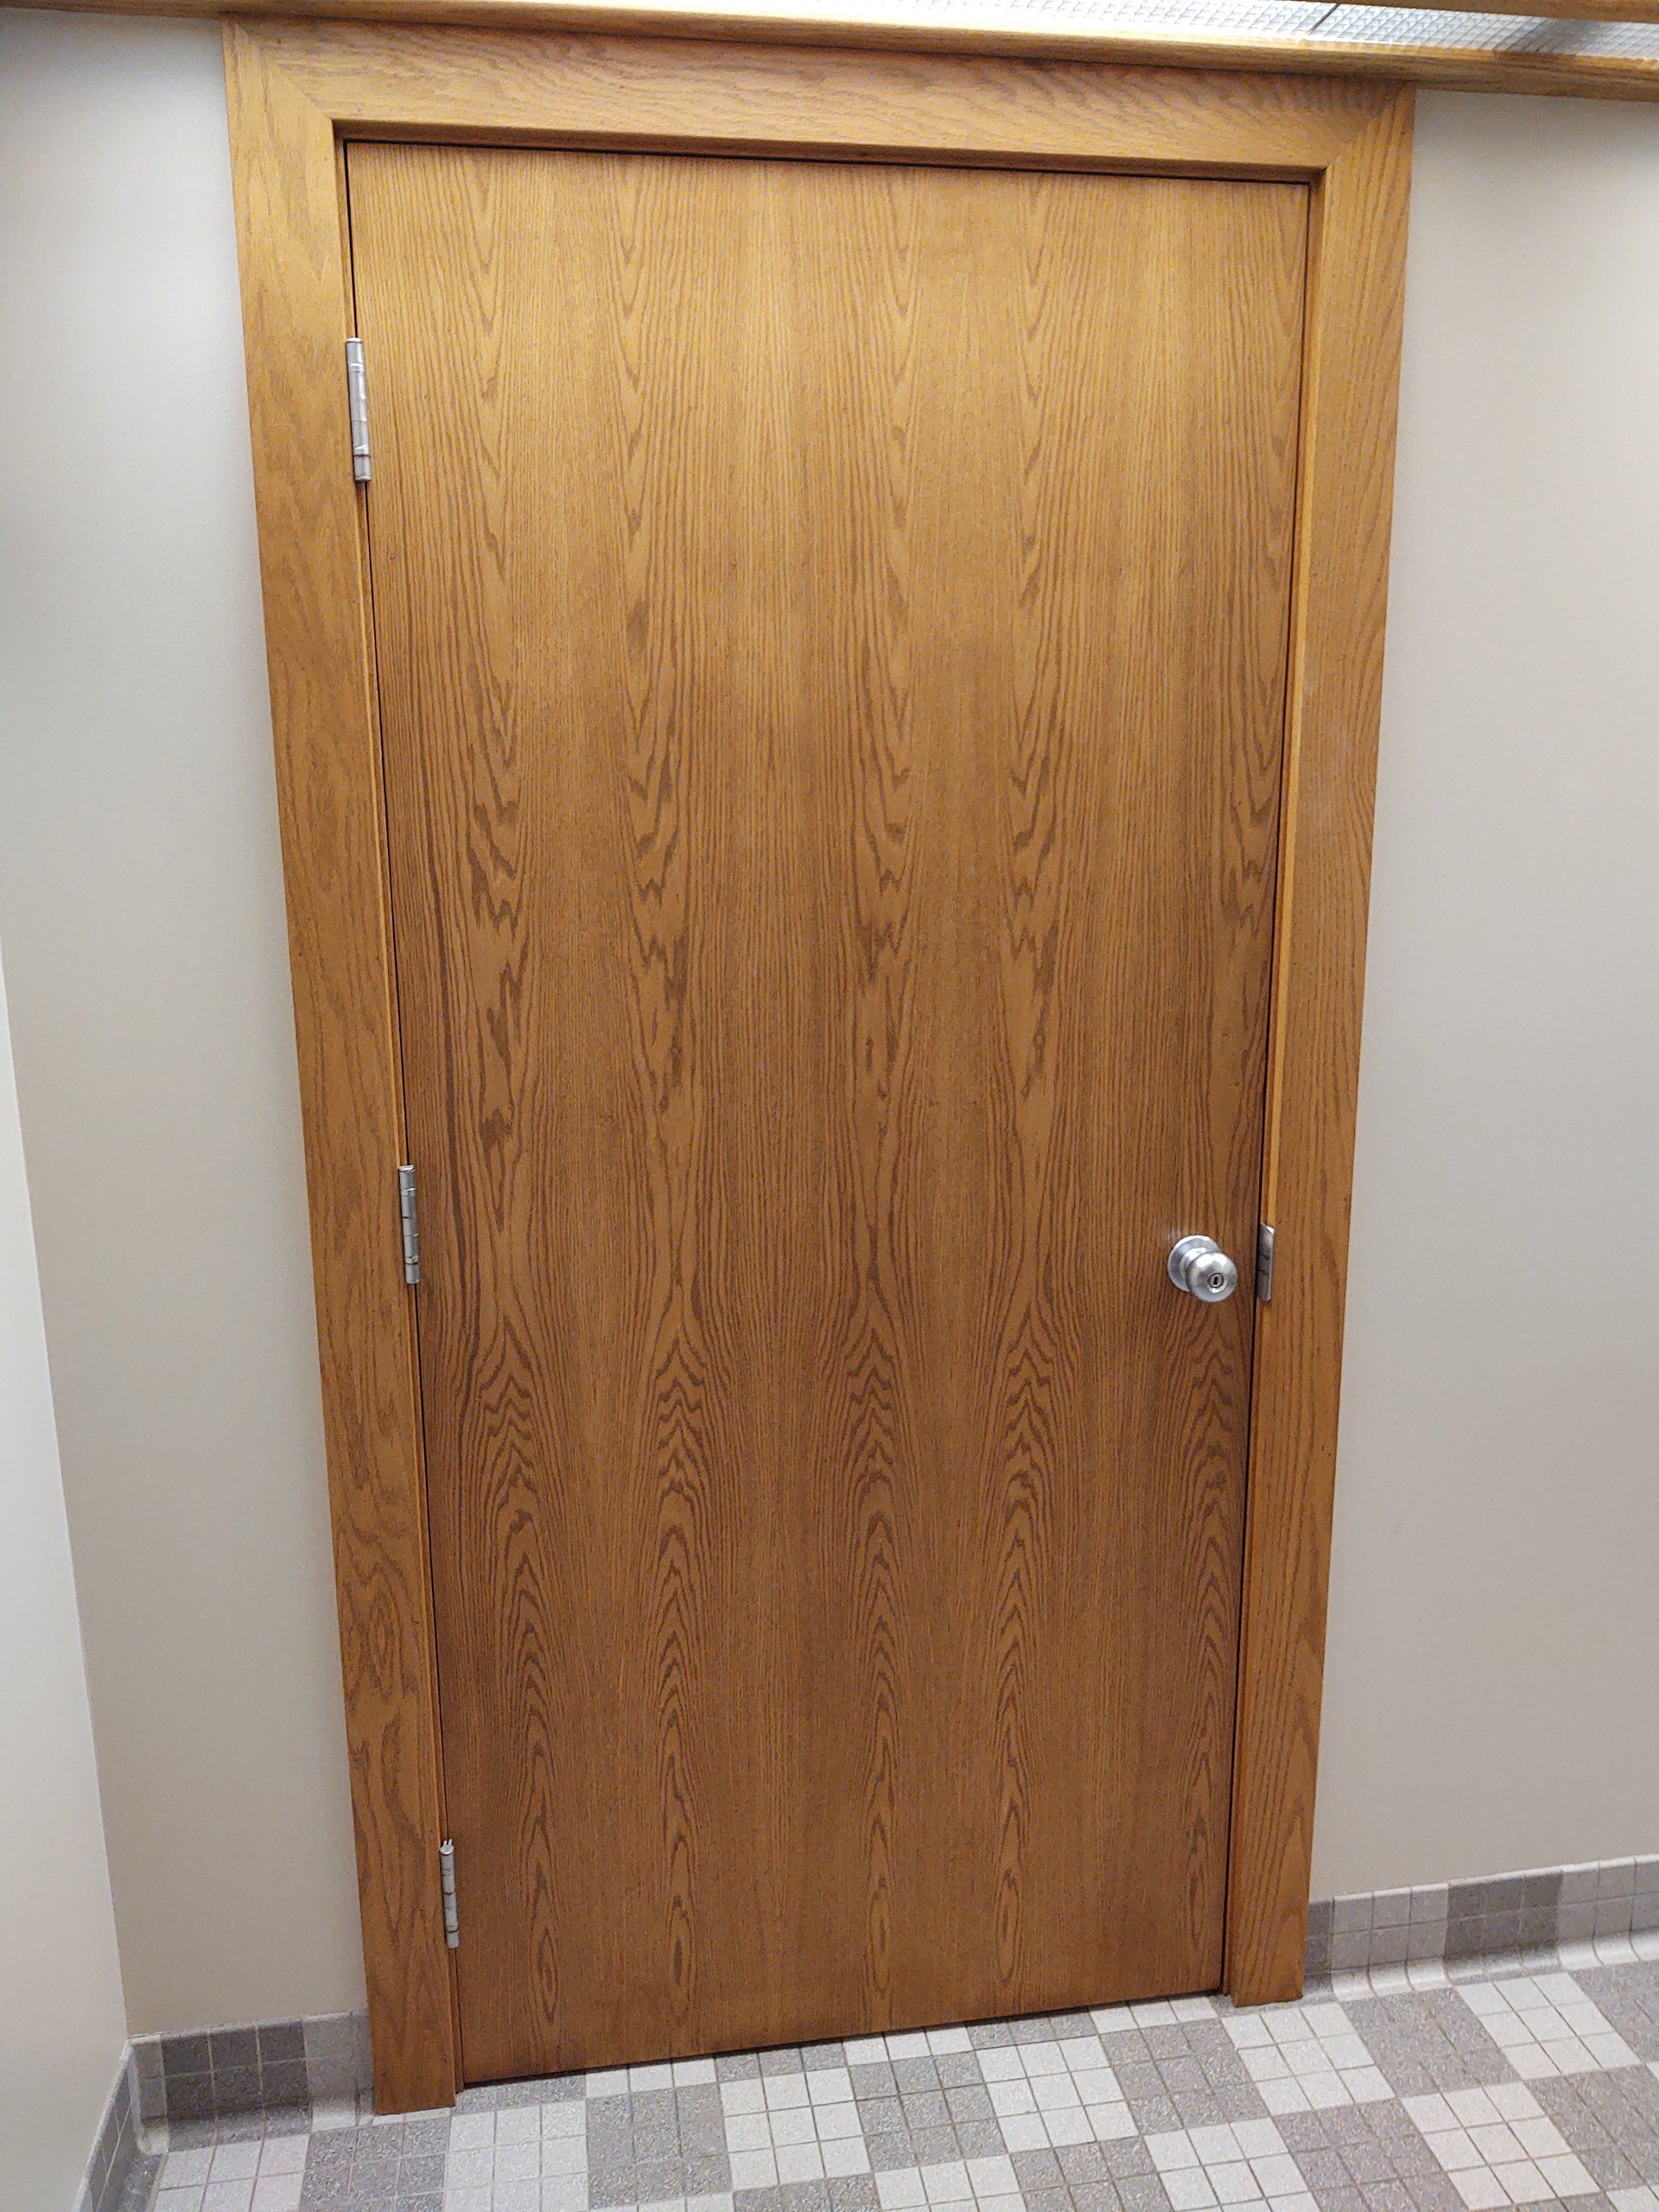 Wooden Door in hallway.